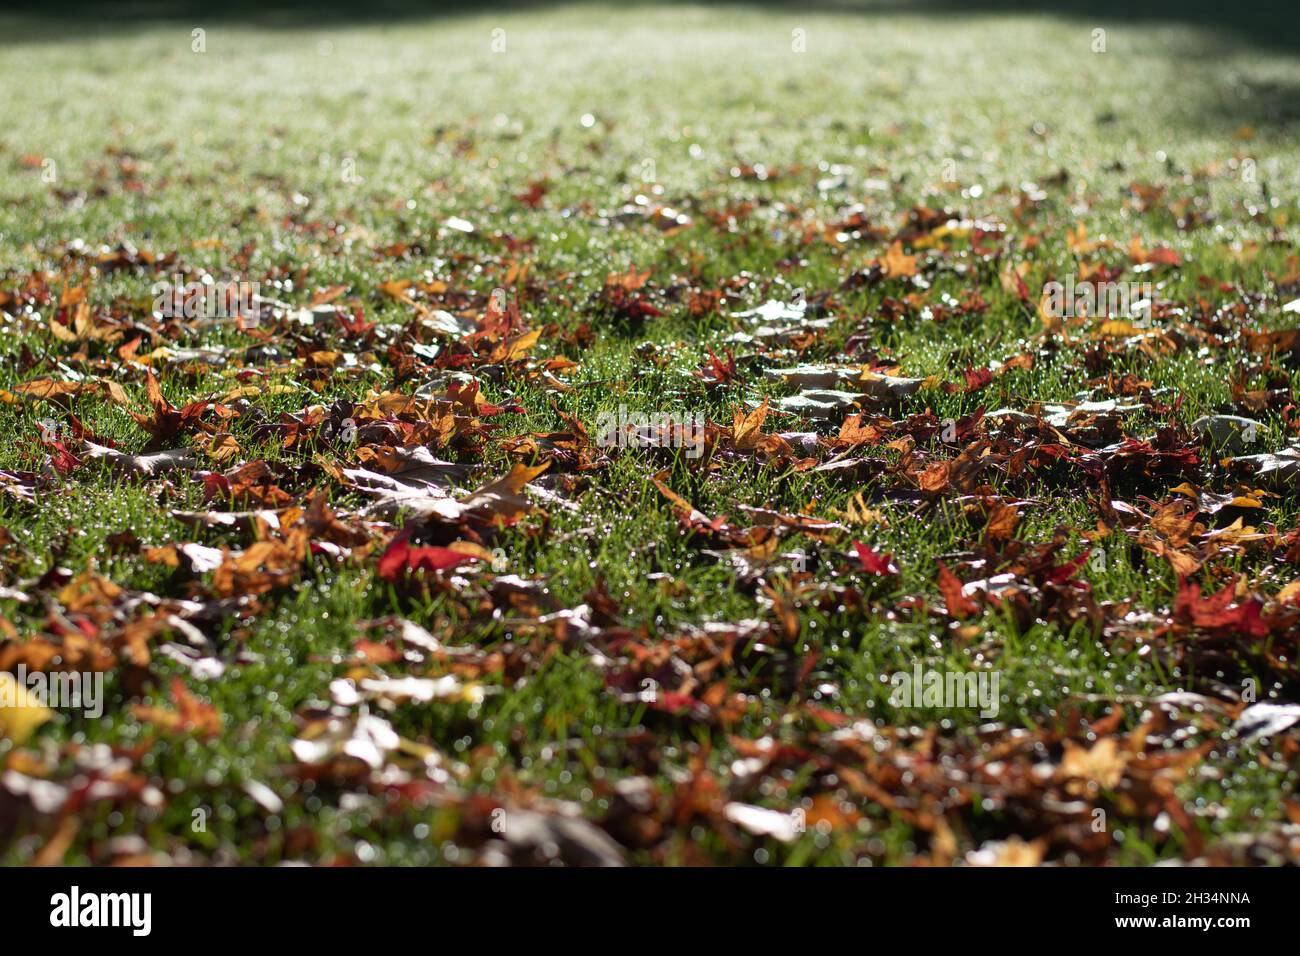 Herbst / Herbst Grünes Gras Rasen mit gefallenen Laub Blätter Wechsel der Saison Stockfoto